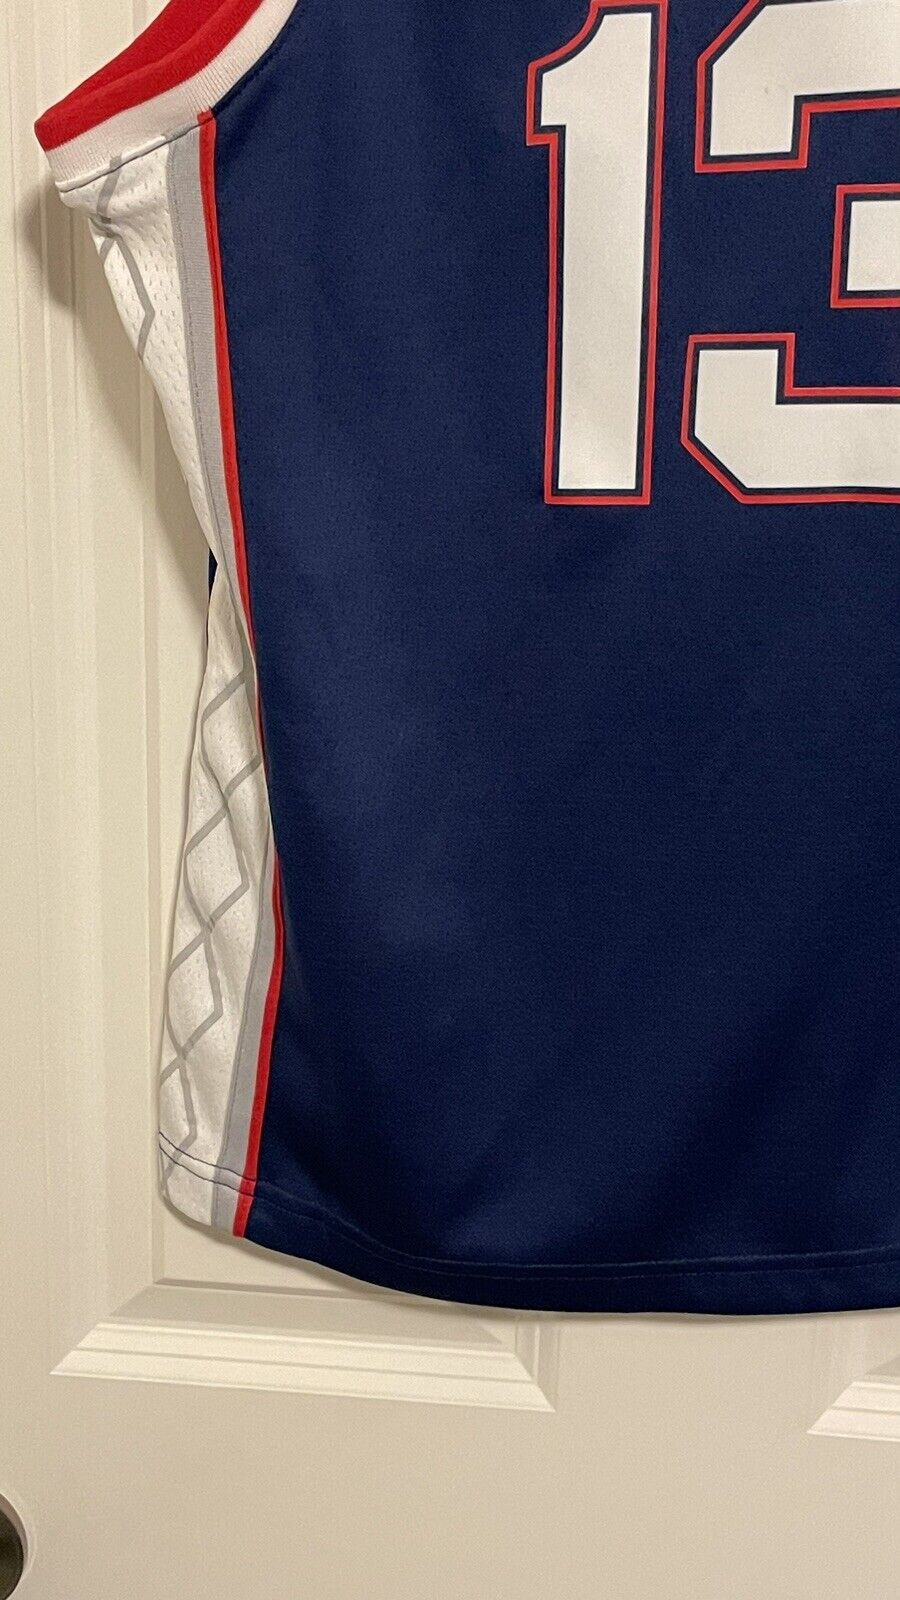 2021 NBA Nike Brooklyn Nets James Harden Earned Edition Swingman Jersey -  Size M